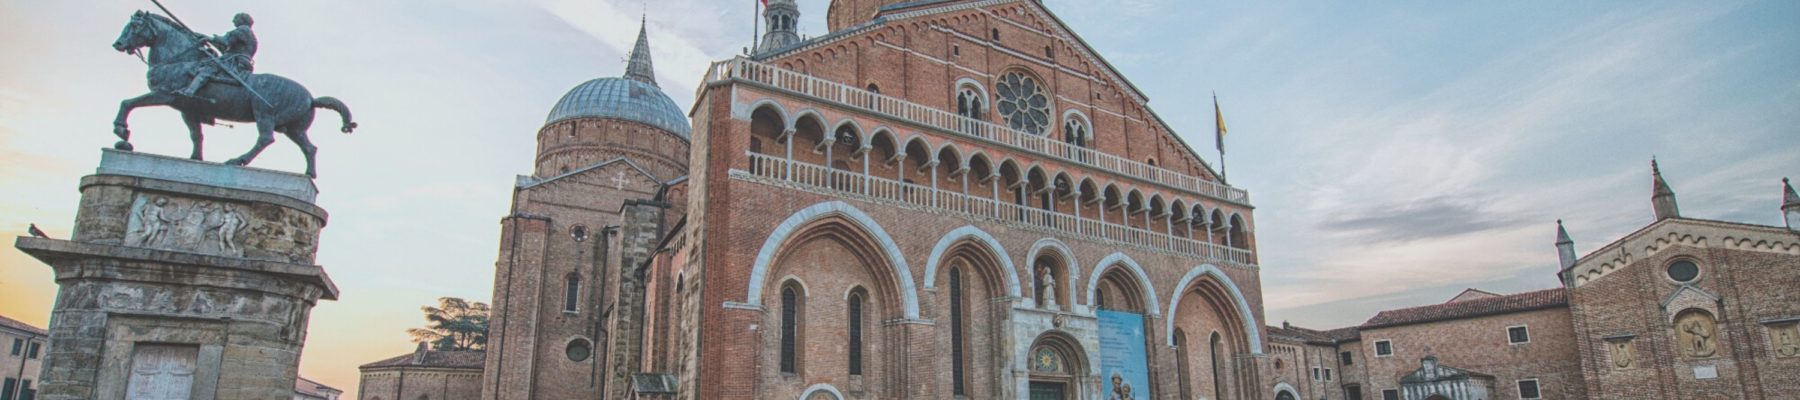 Visita Padova con Mariaclaudia